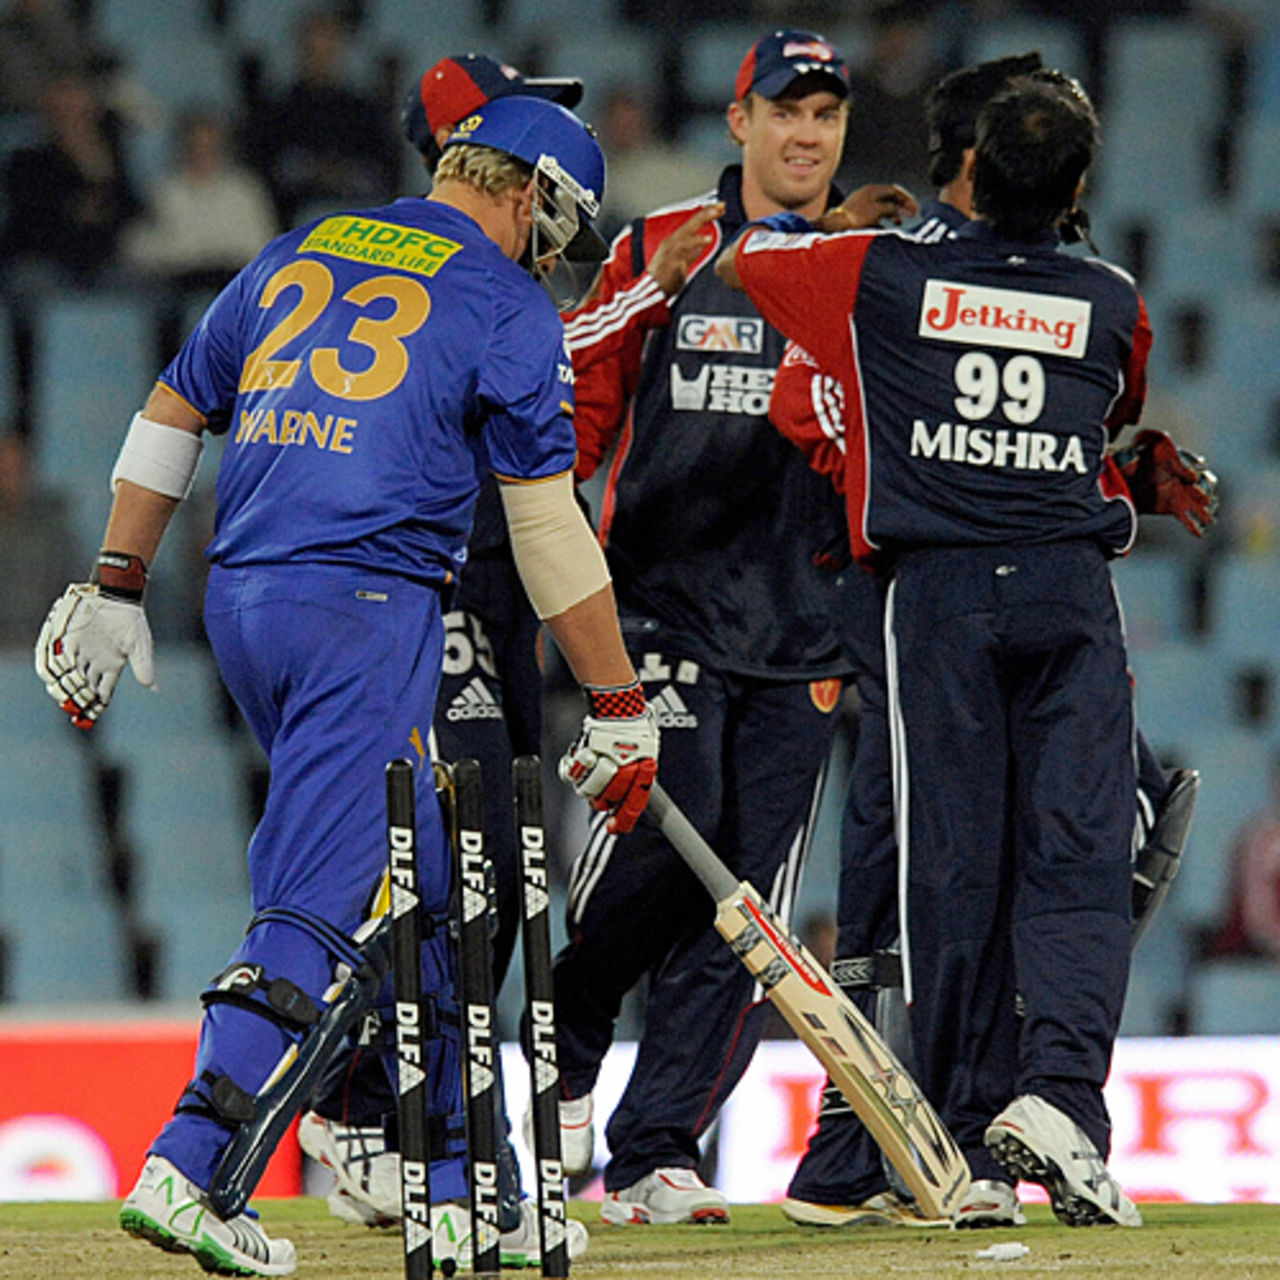 The Delhi Daredevils celebrate Shane Warne's dismissal, Delhi Daredevils v Rajasthan Royals, IPL, 18th match, Centurion, April 28, 2009